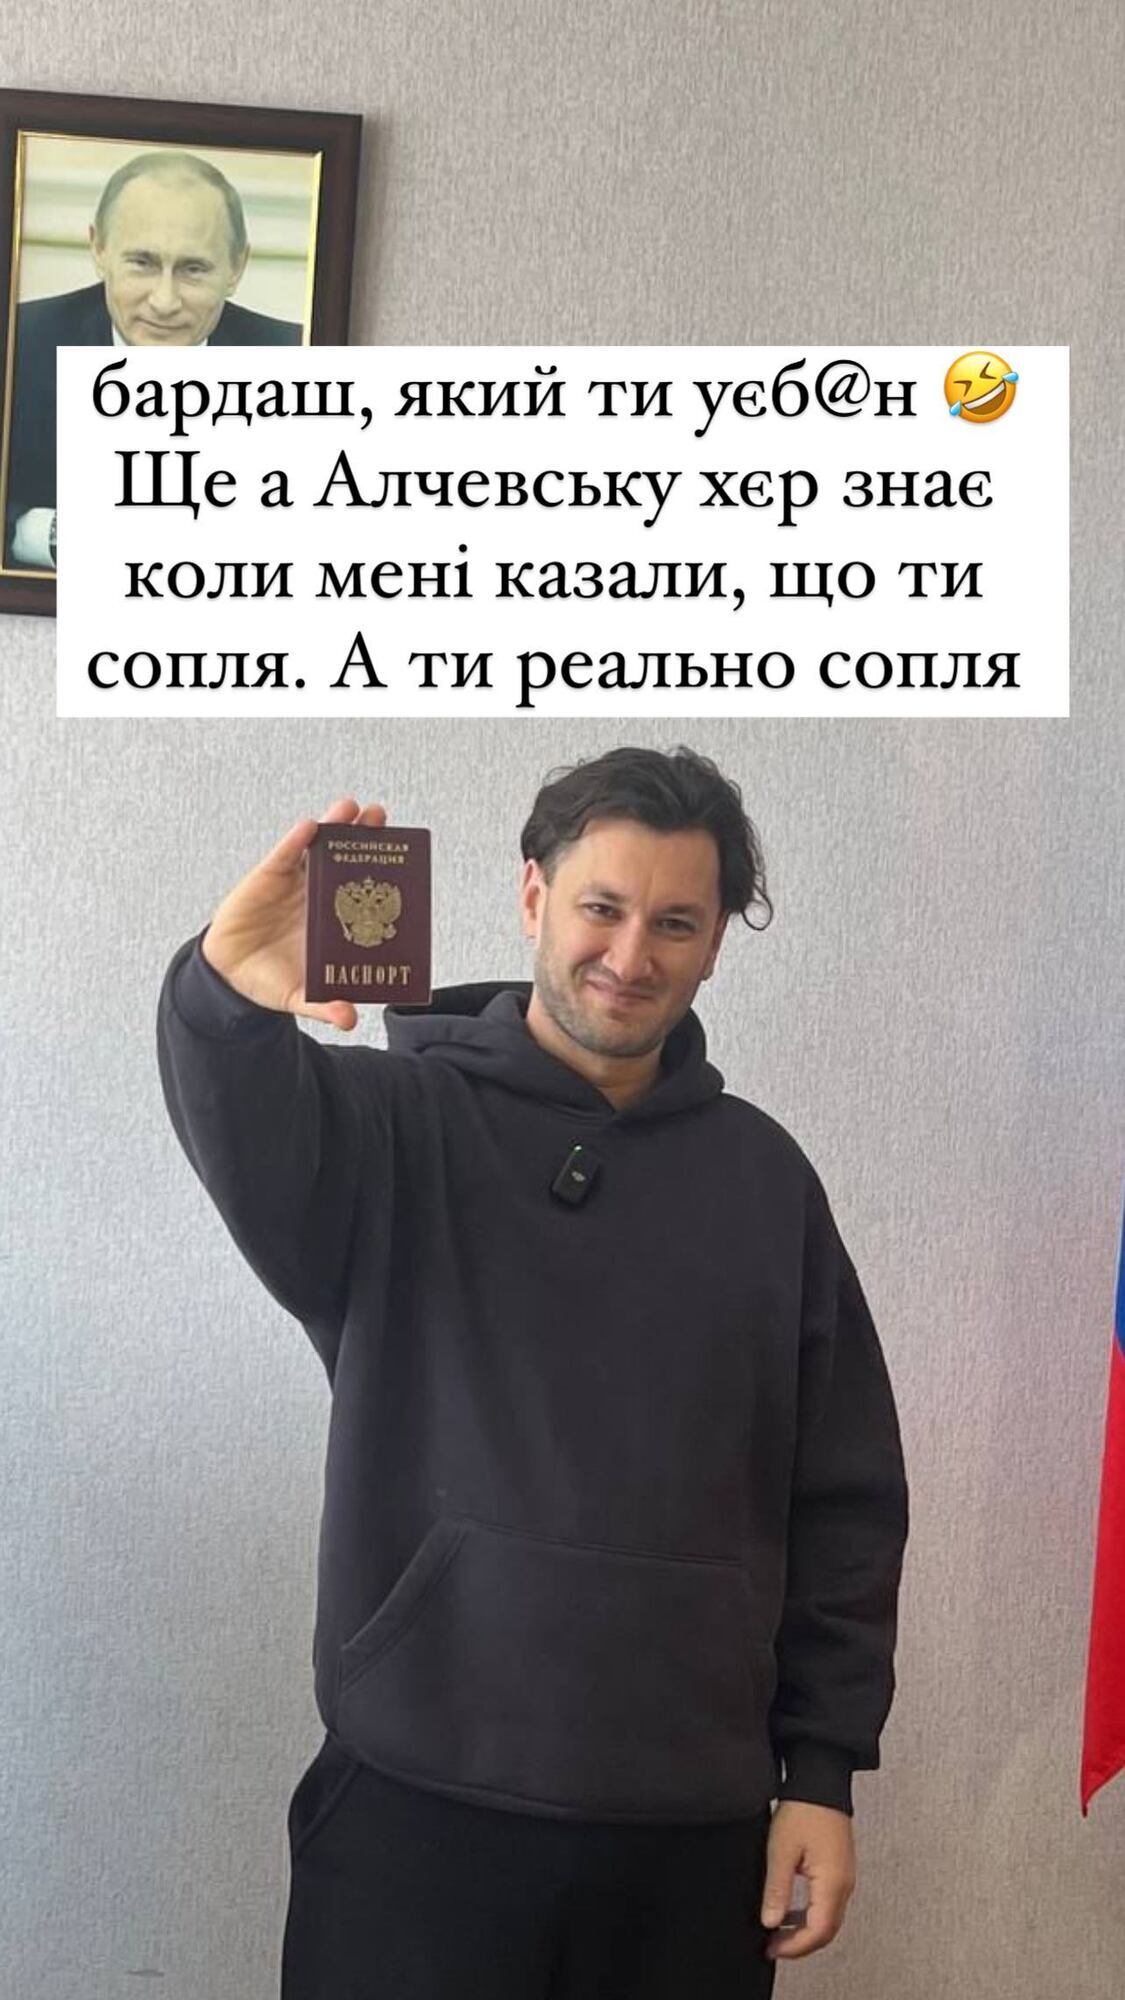 Український продюсер Юрій Бардаш отримав російський паспорт і похизувався ним на тлі портрета Путіна